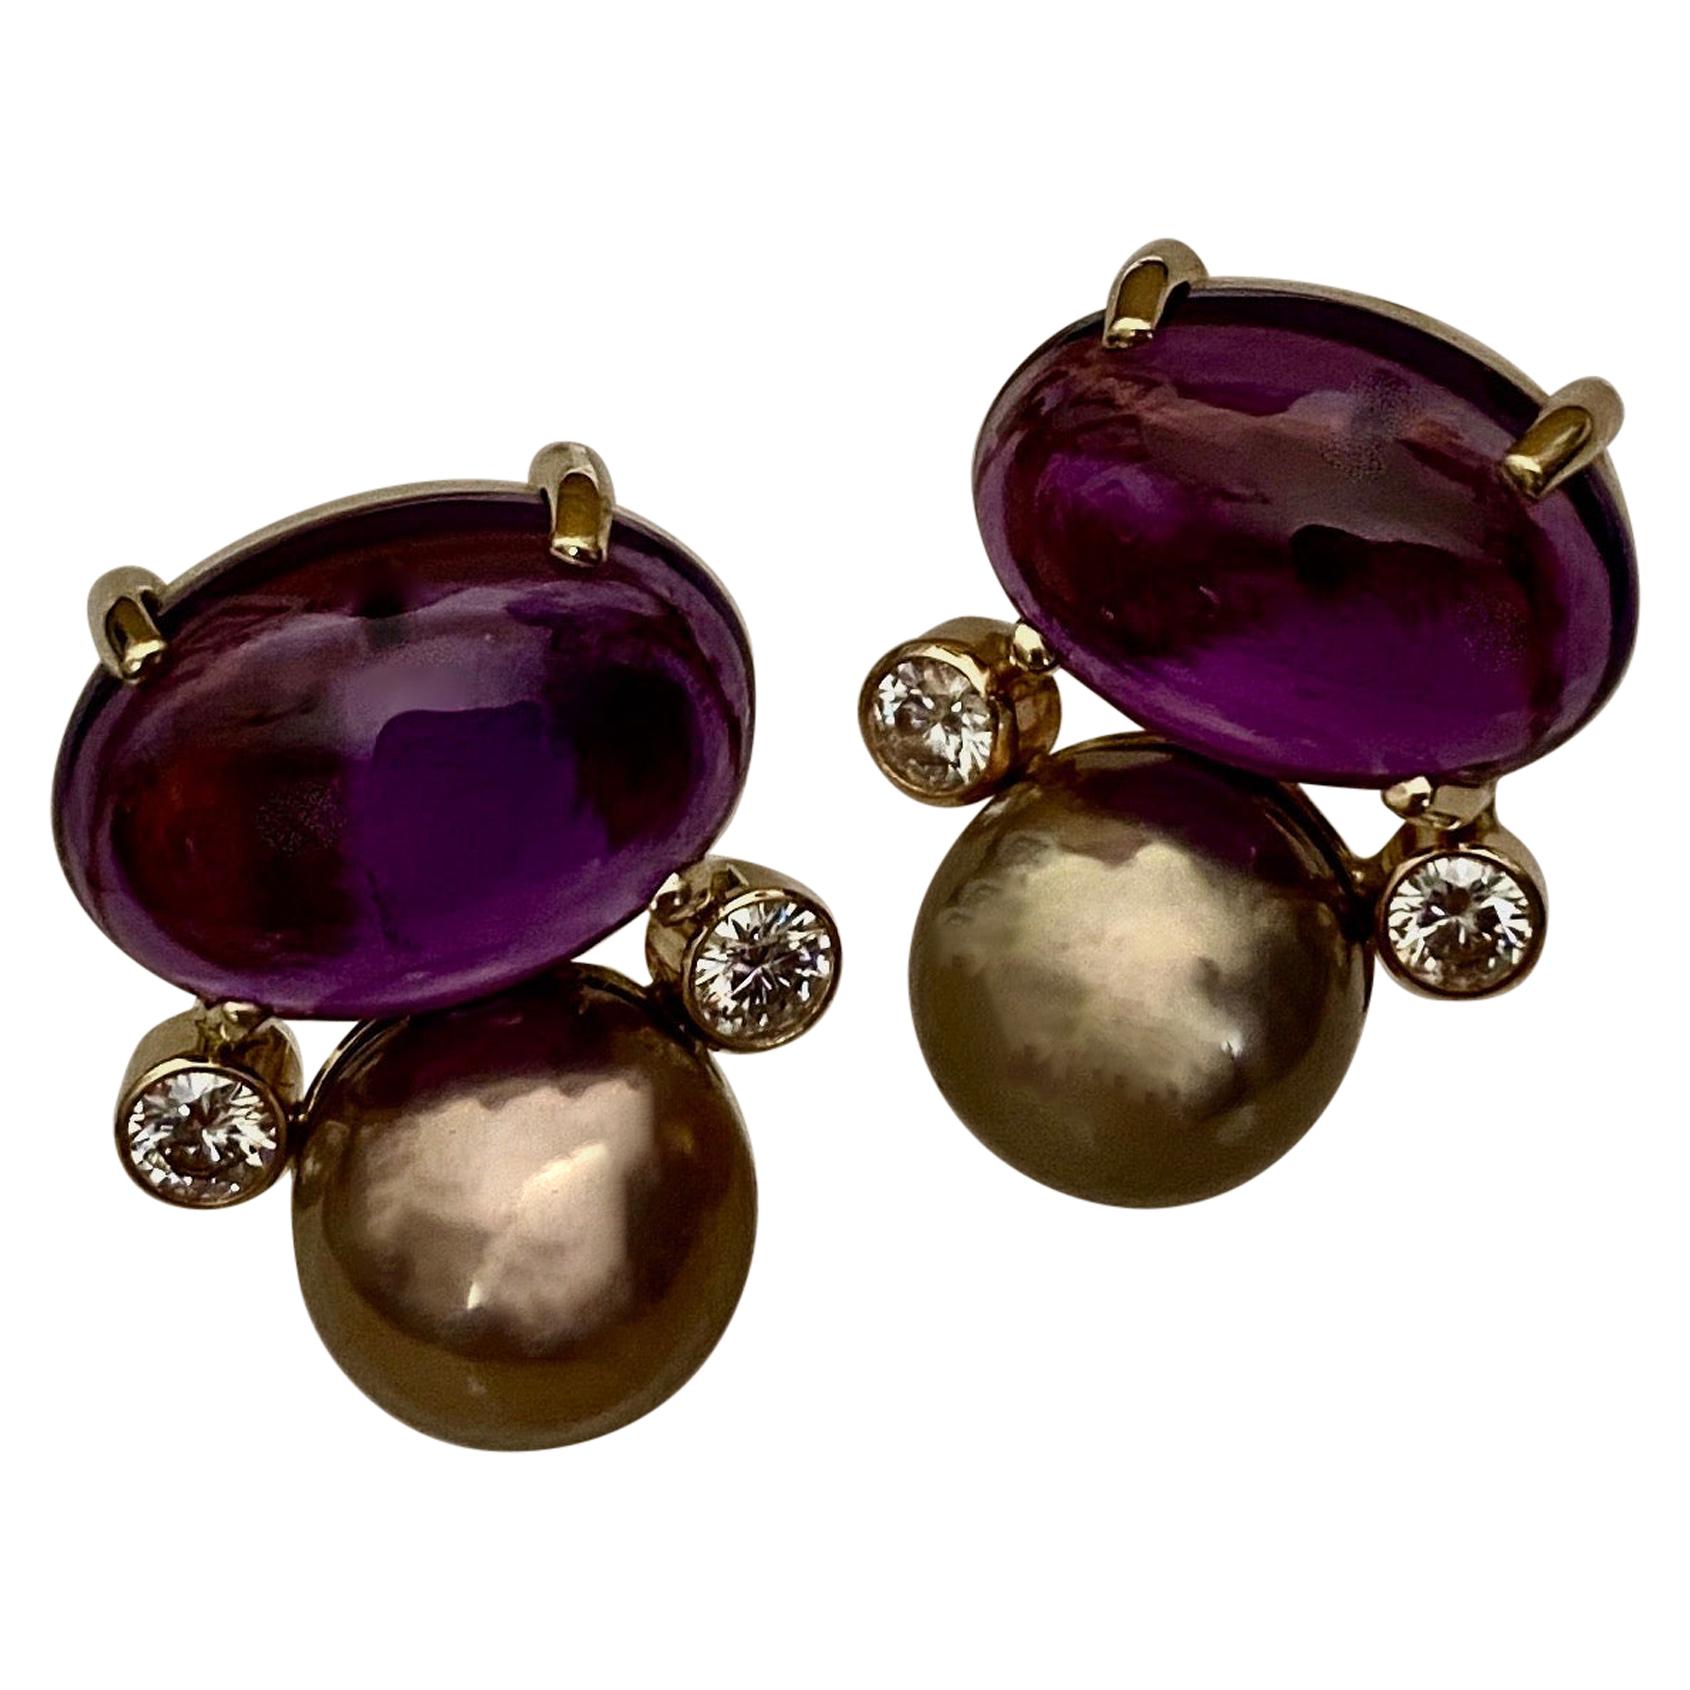 Michael Kneebone Cabochon Amethyst Diamond Lavender Pearl Button Earrings